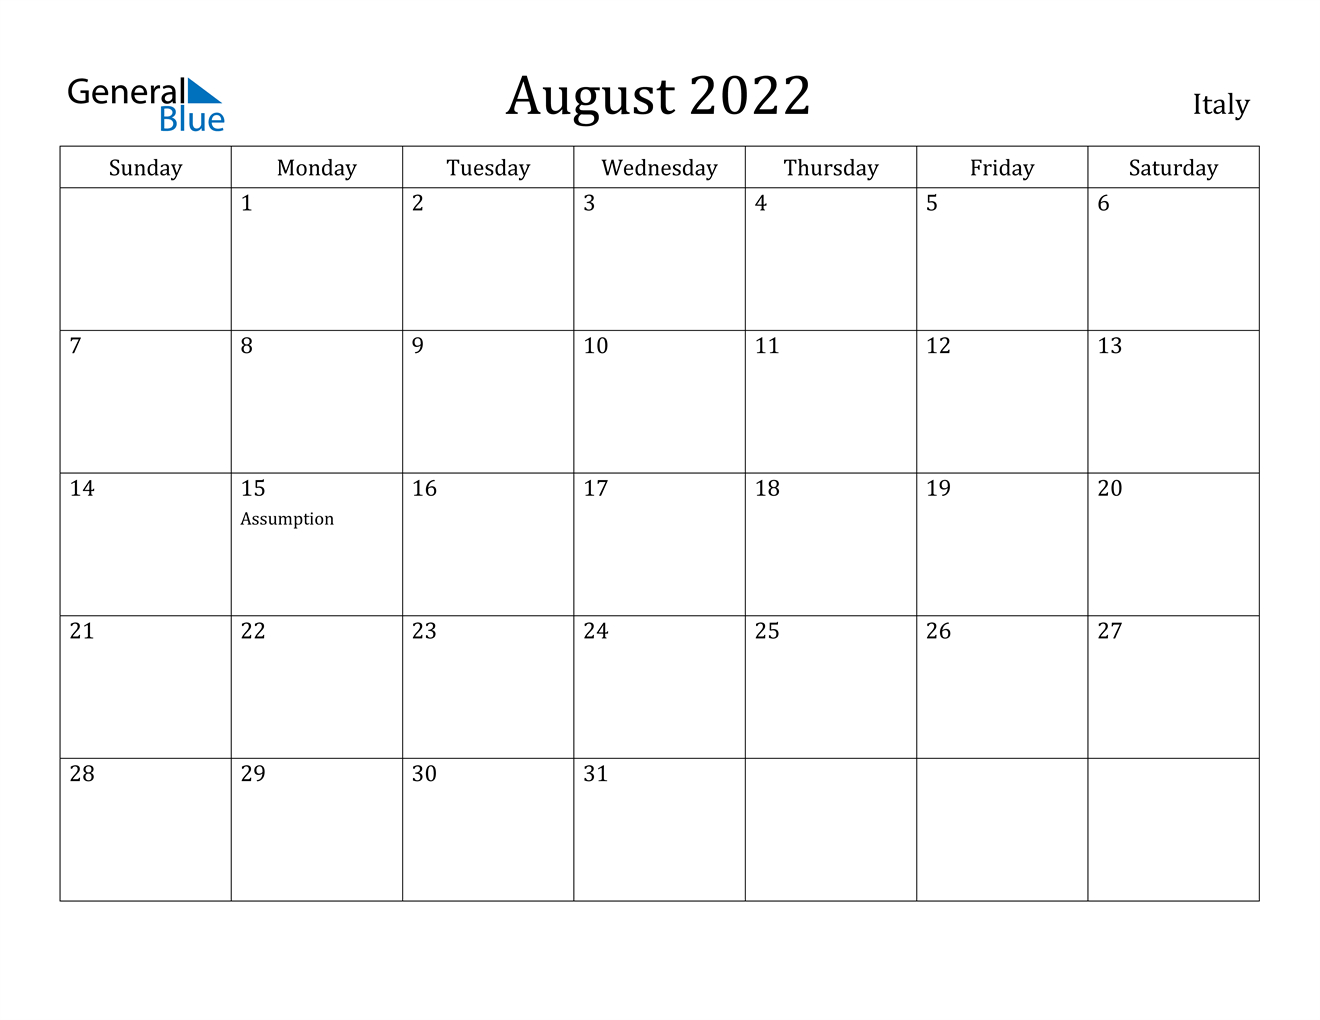 August 2022 Calendar - Italy